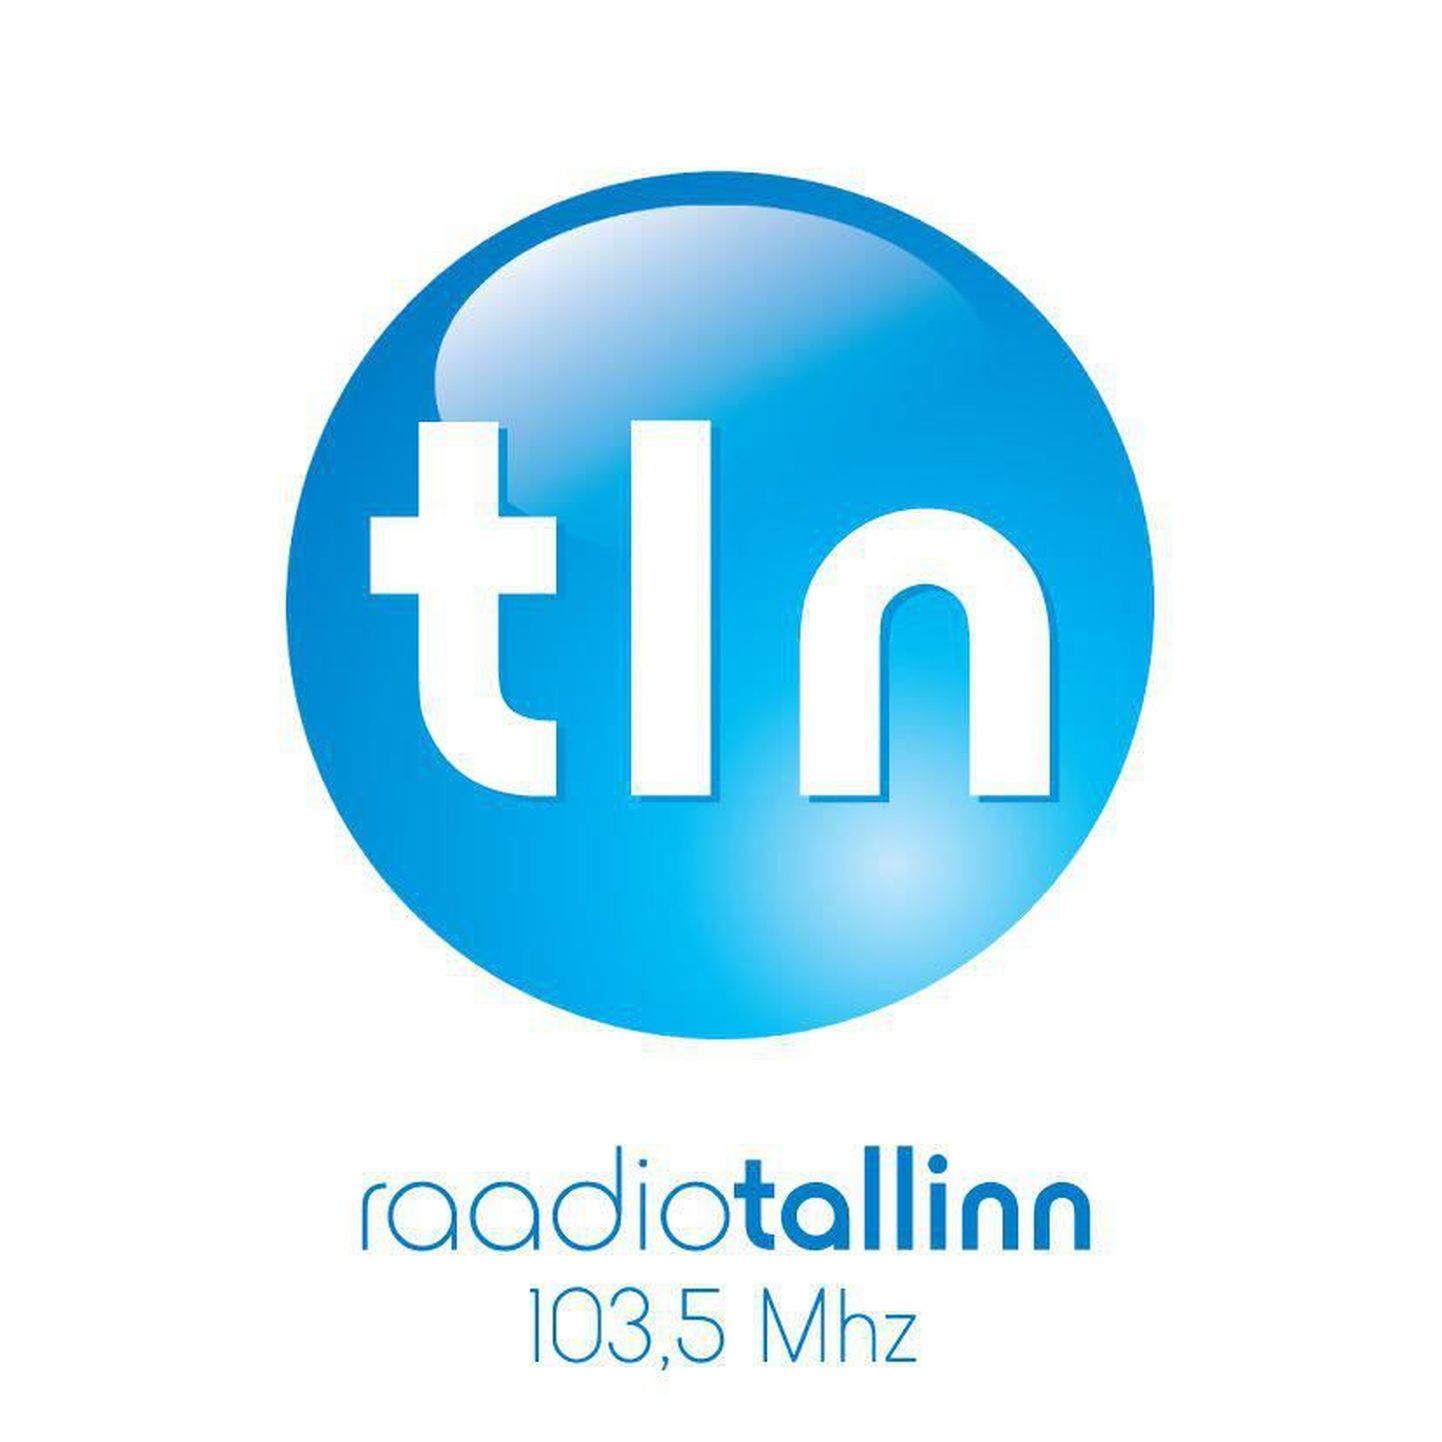 Raadio Tallinn saab 10 aastaseks